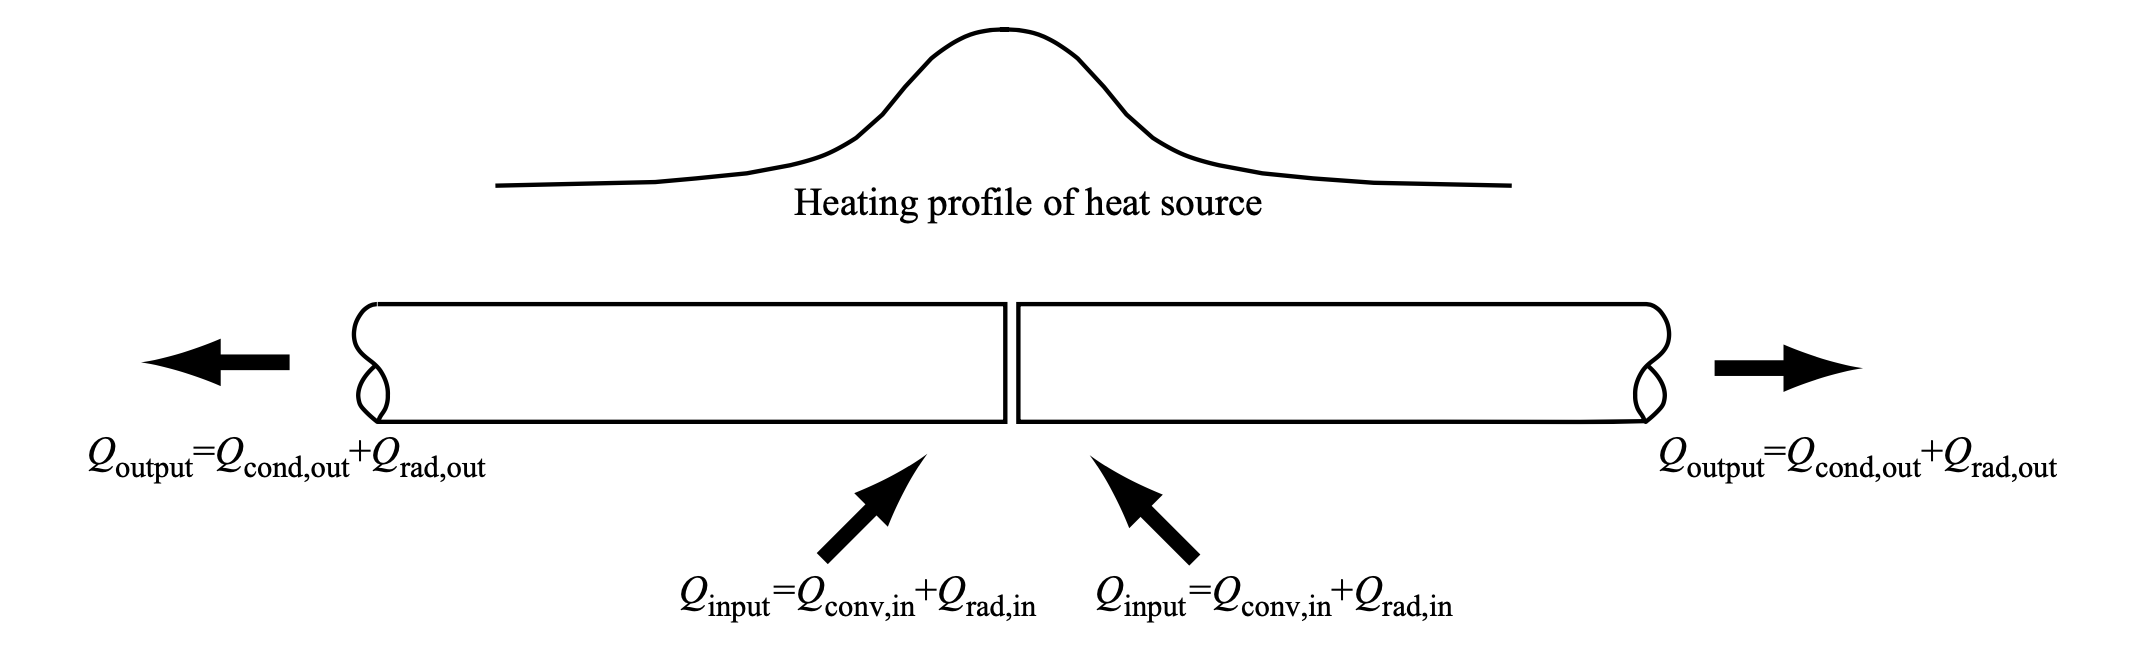 مشخصات گرمایش منبع حرارت